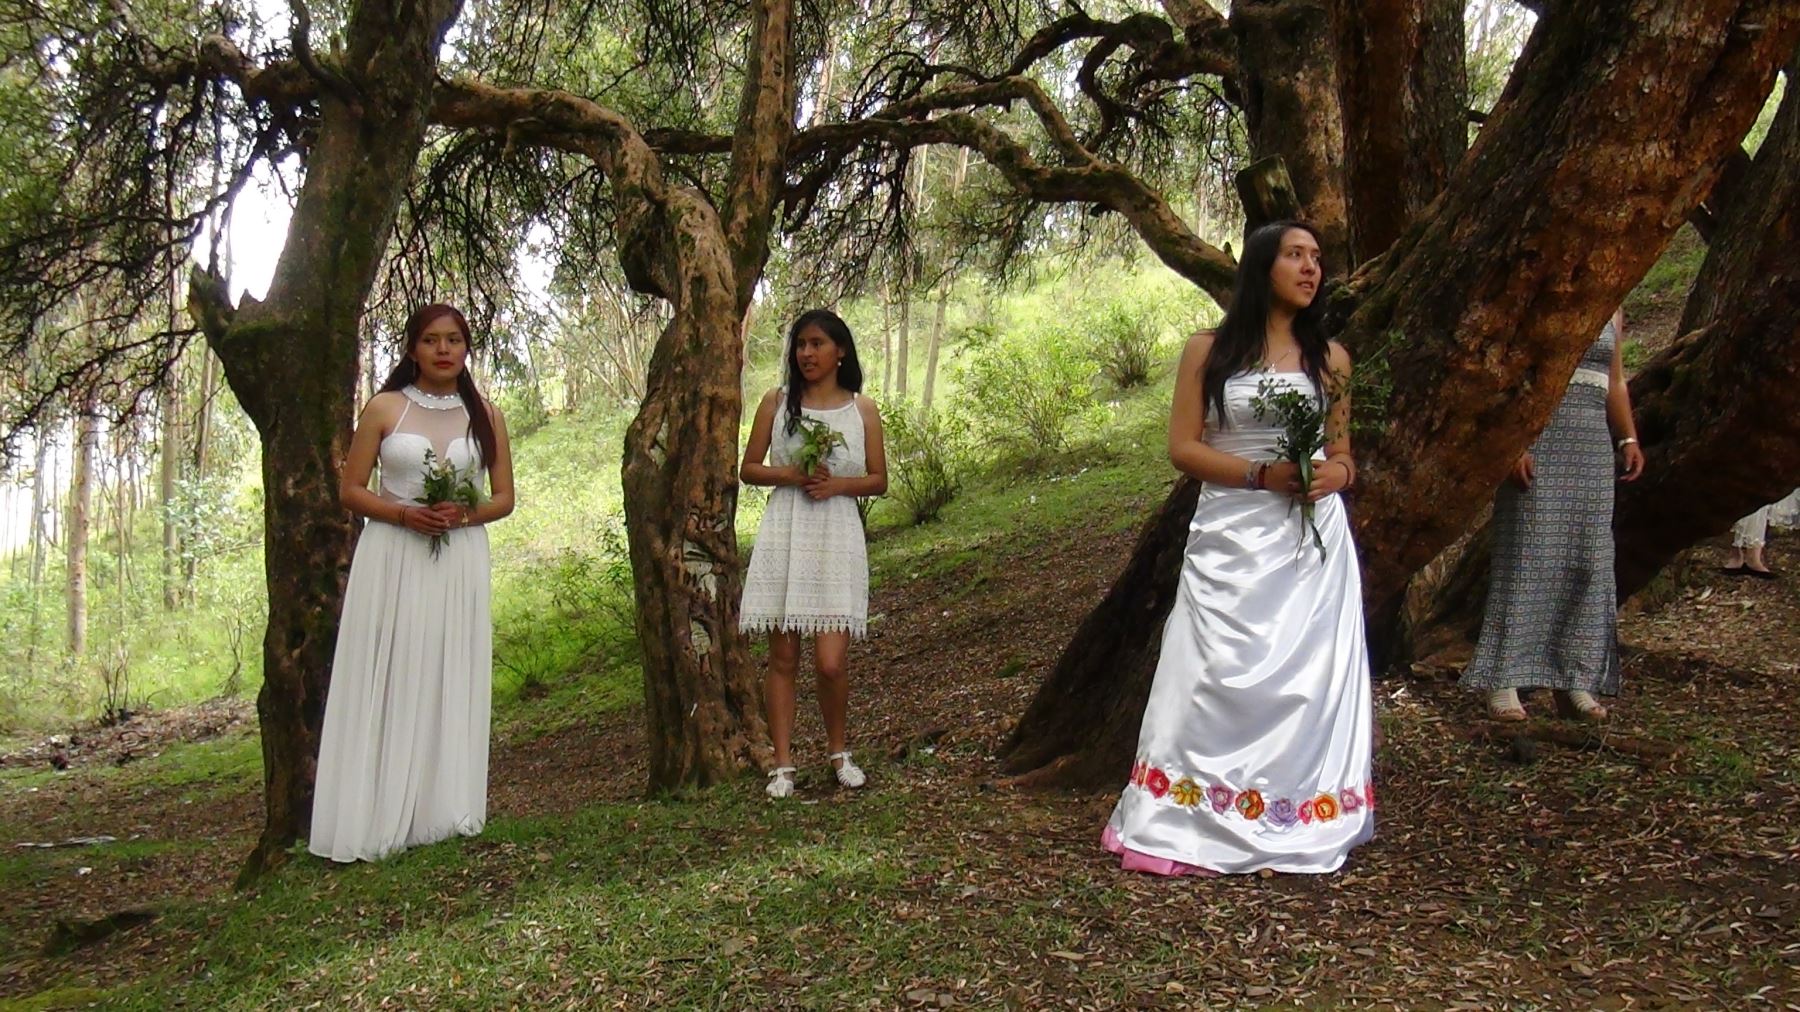 En conmemoración al Día Mundial de la Tierra, en el bosque dorado del anexo de Paccha, en el distrito de El Tambo, provincia de Huancayo, región Junín, se realizaron diversas actividades de sensibilización.